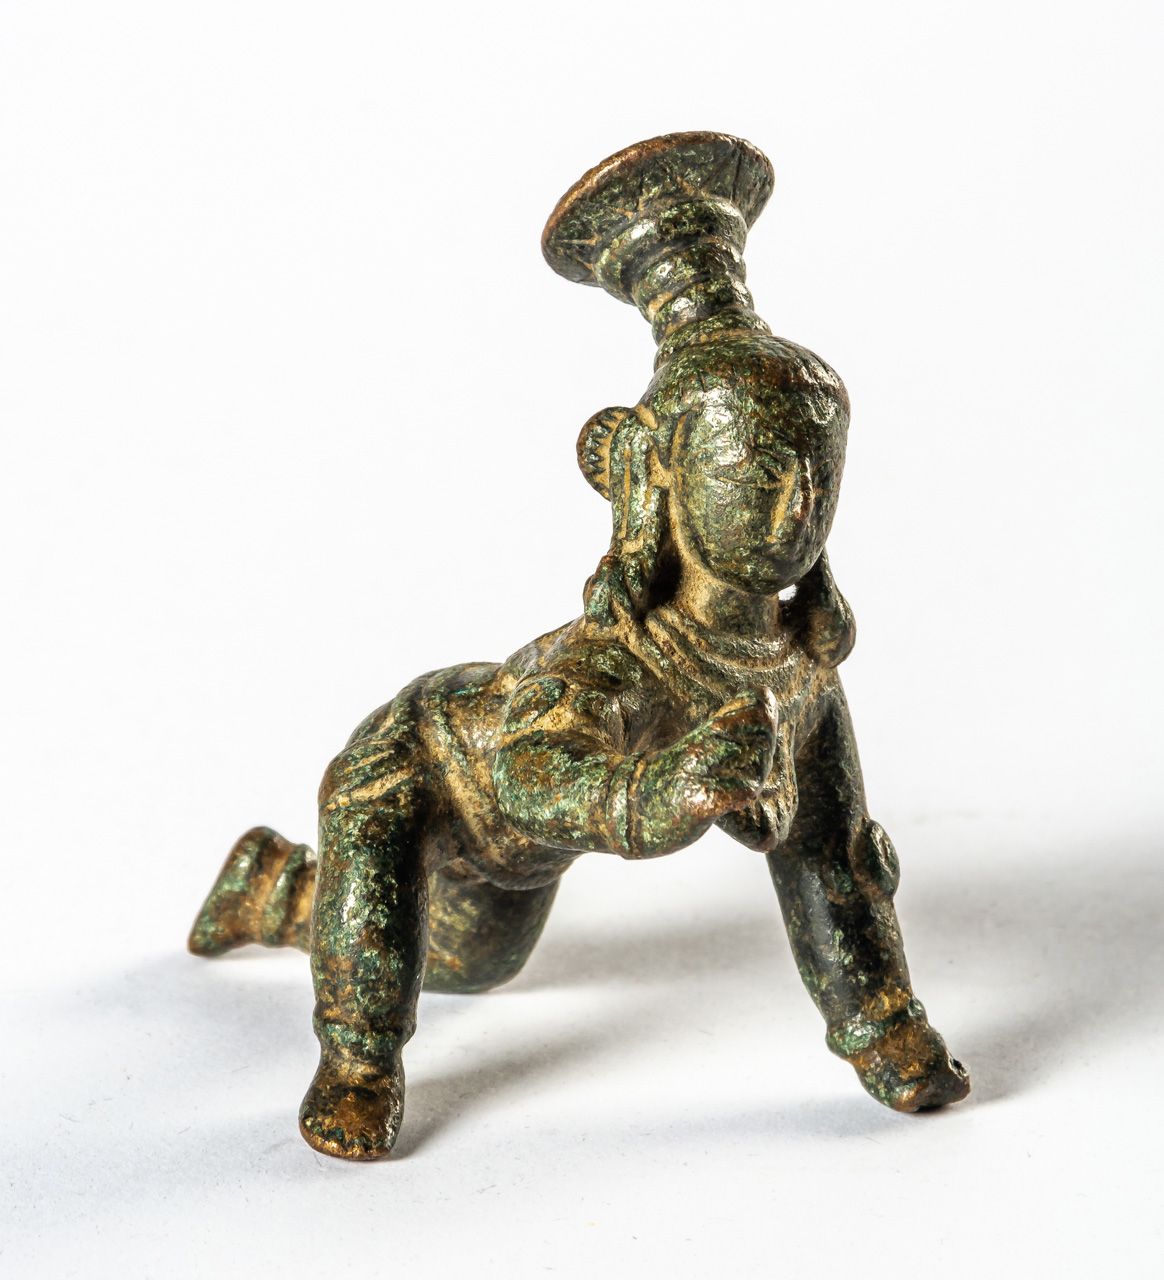 BABY KRISHNA India, bronzo, probabilmente intorno al 1900

7 x 5,5 x 5 cm





F&hellip;